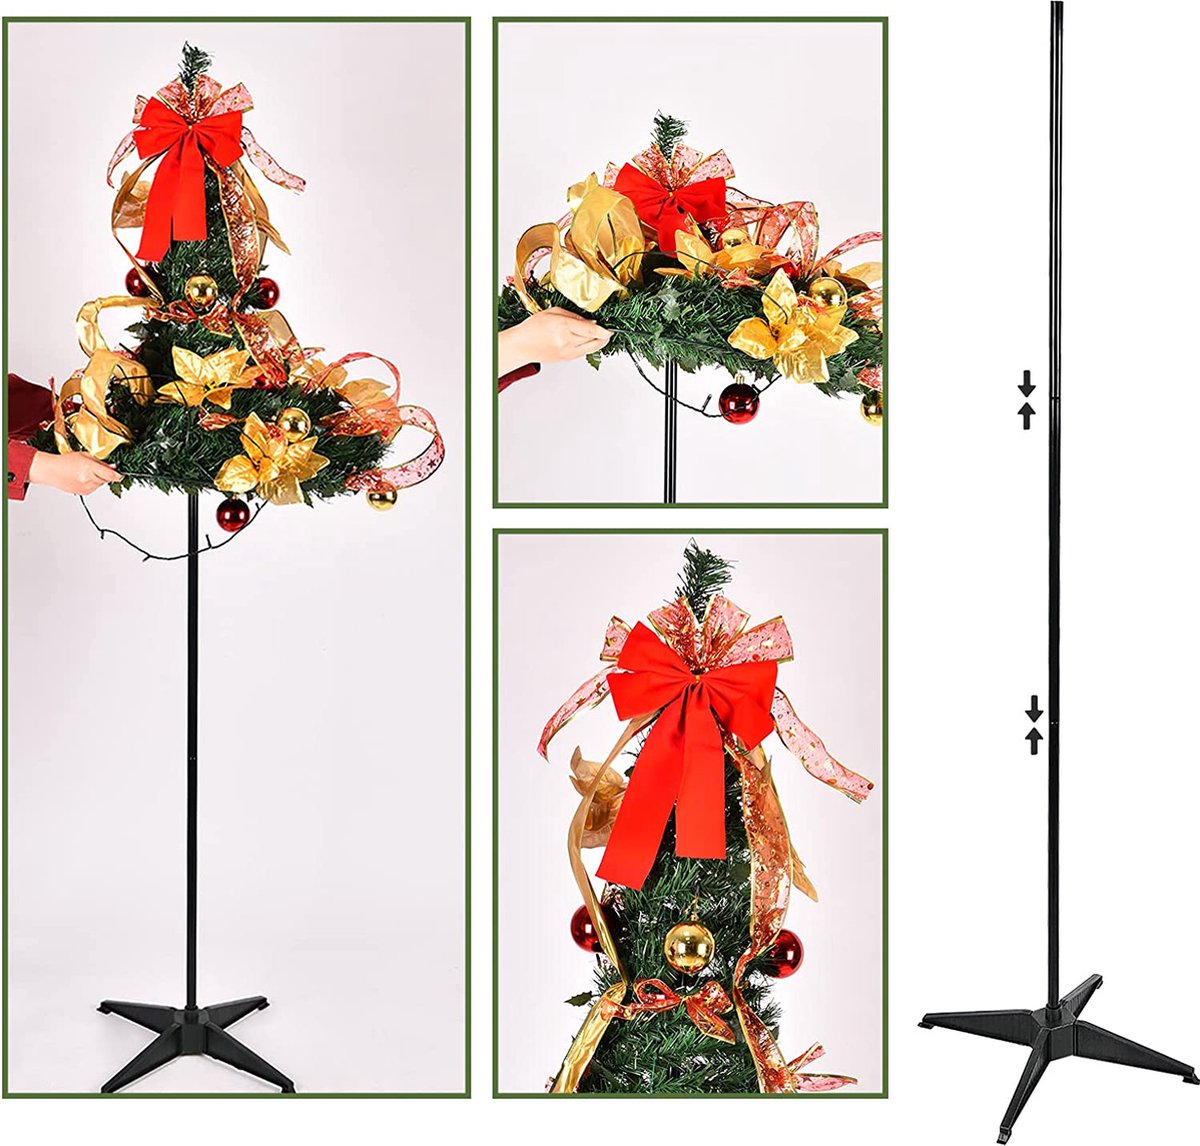 Kunstkerstboom 180 cm Opvouwbaar Met Versiering | Opvouwbare Kerstboom | Versierde Kunstkerstboom Met Verlichting